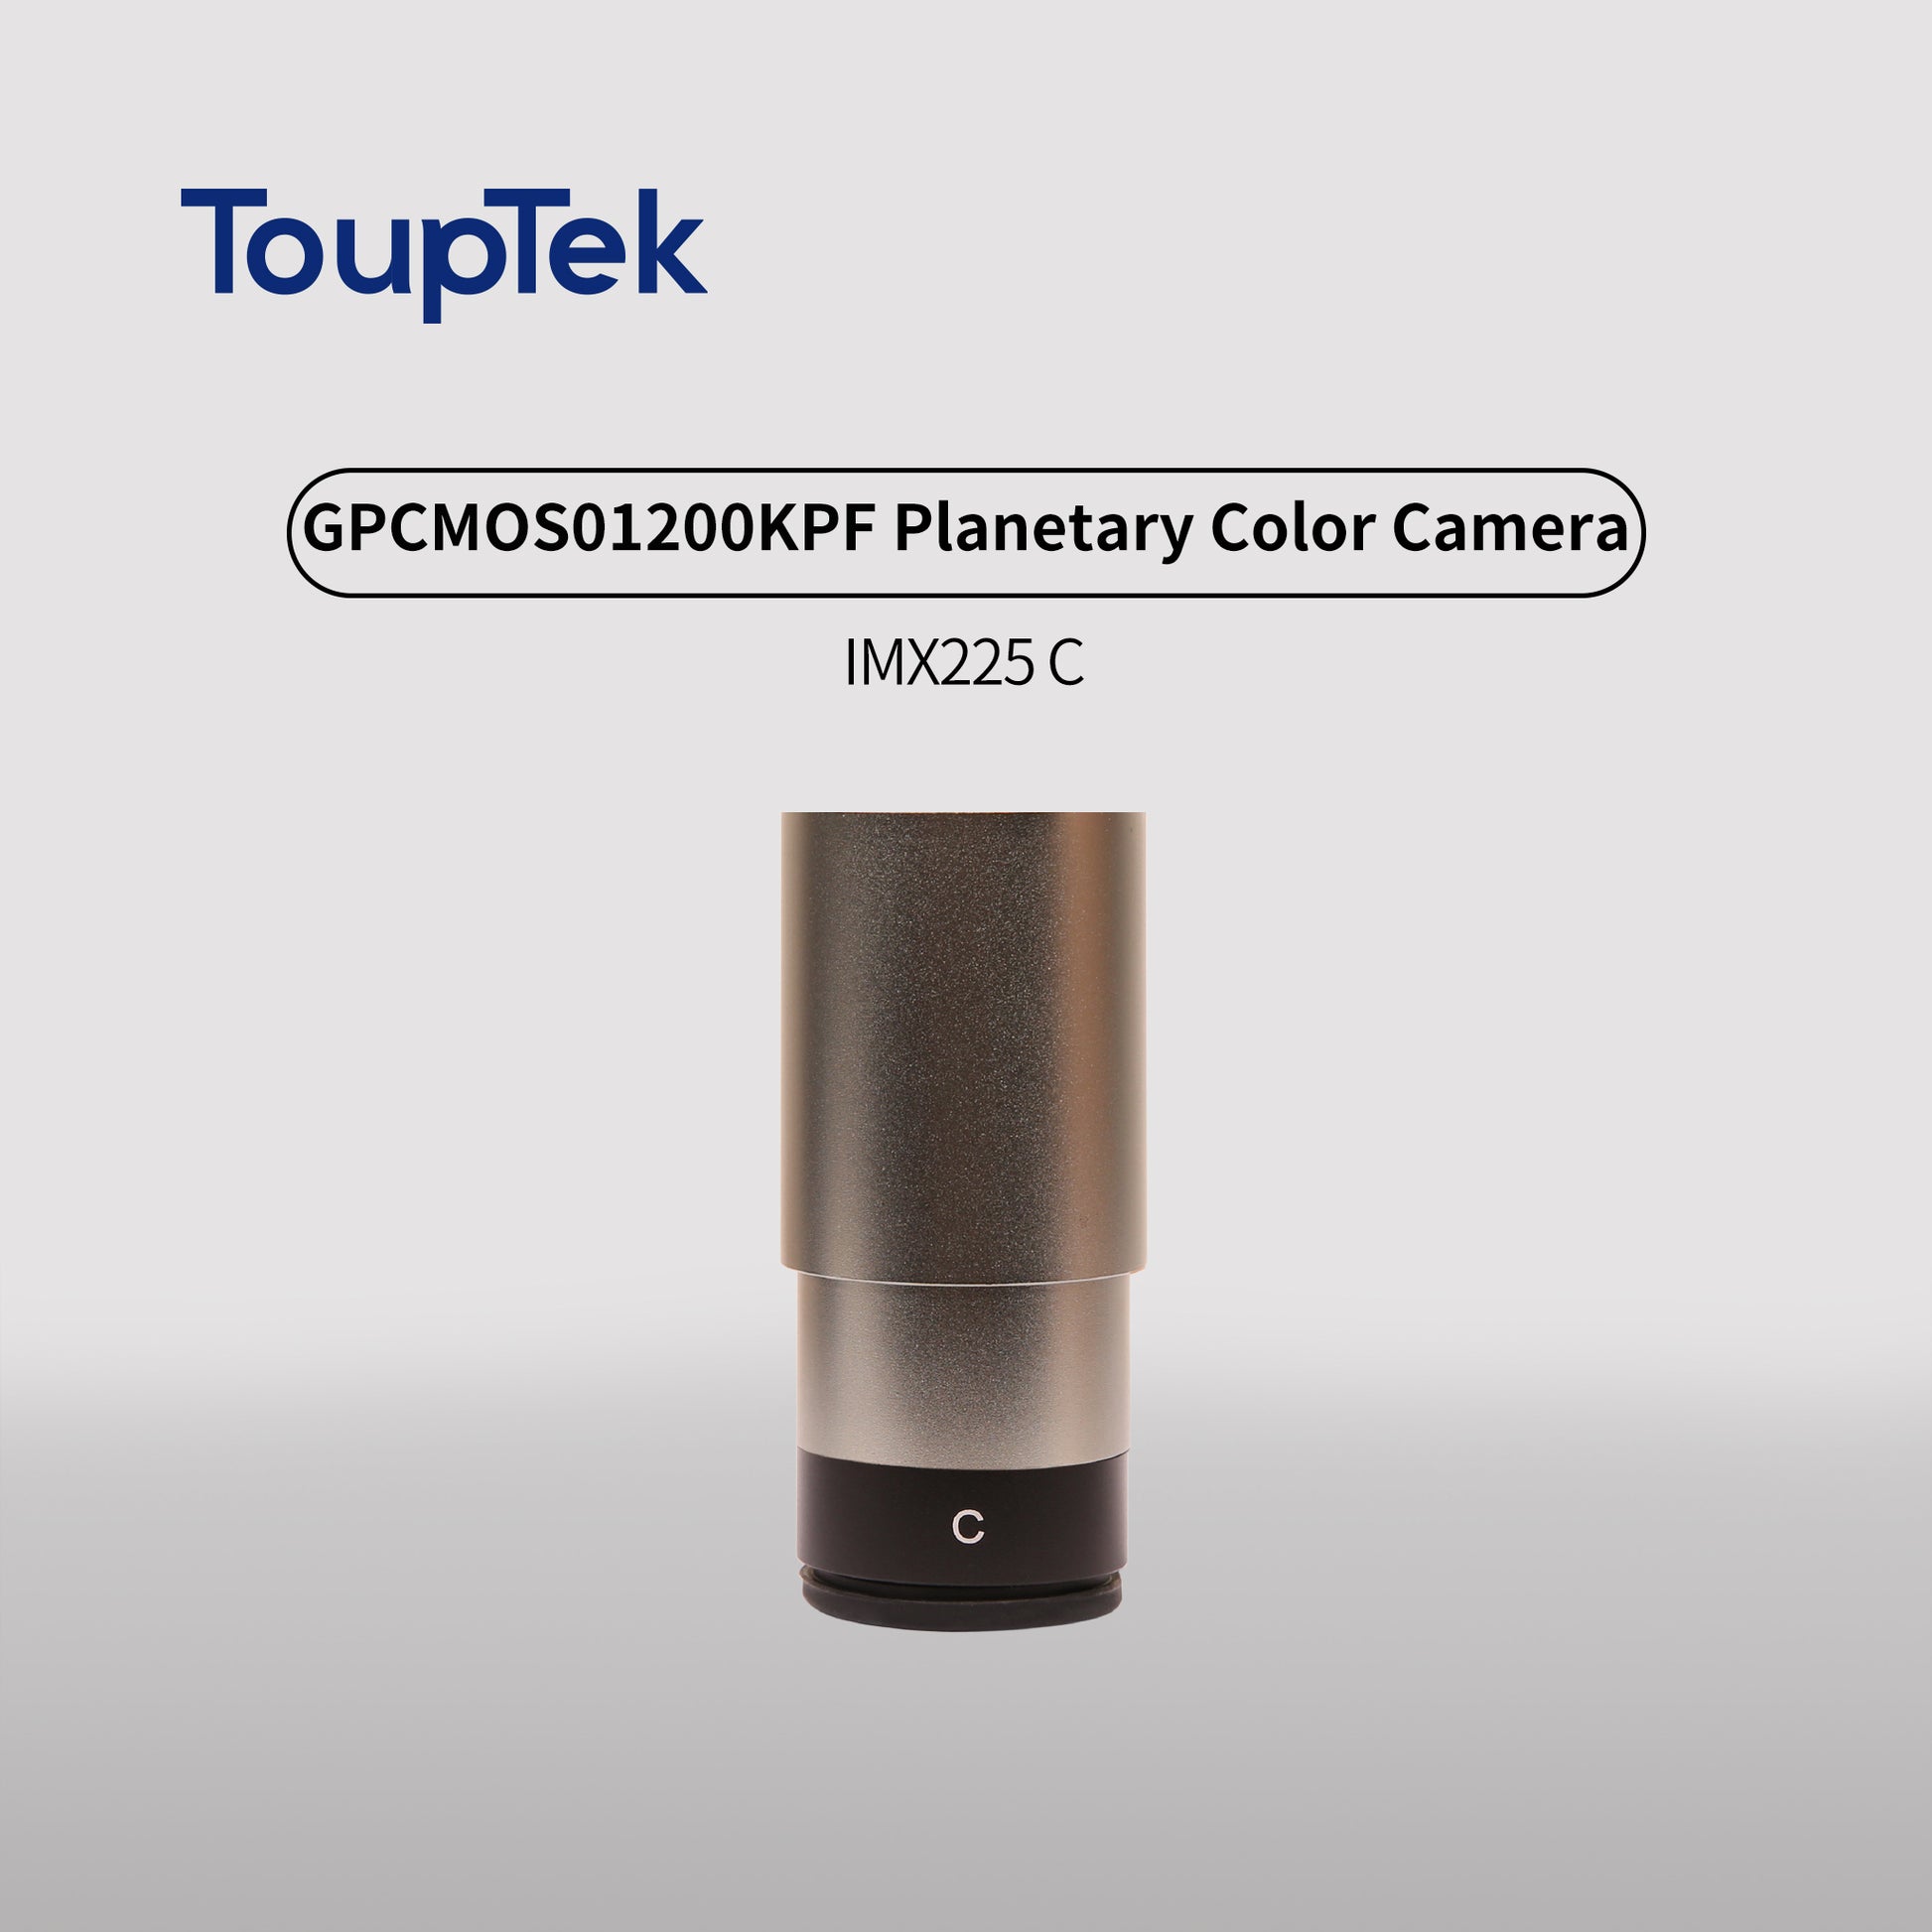 GPCMOS01200KPF Planetary Color Camera